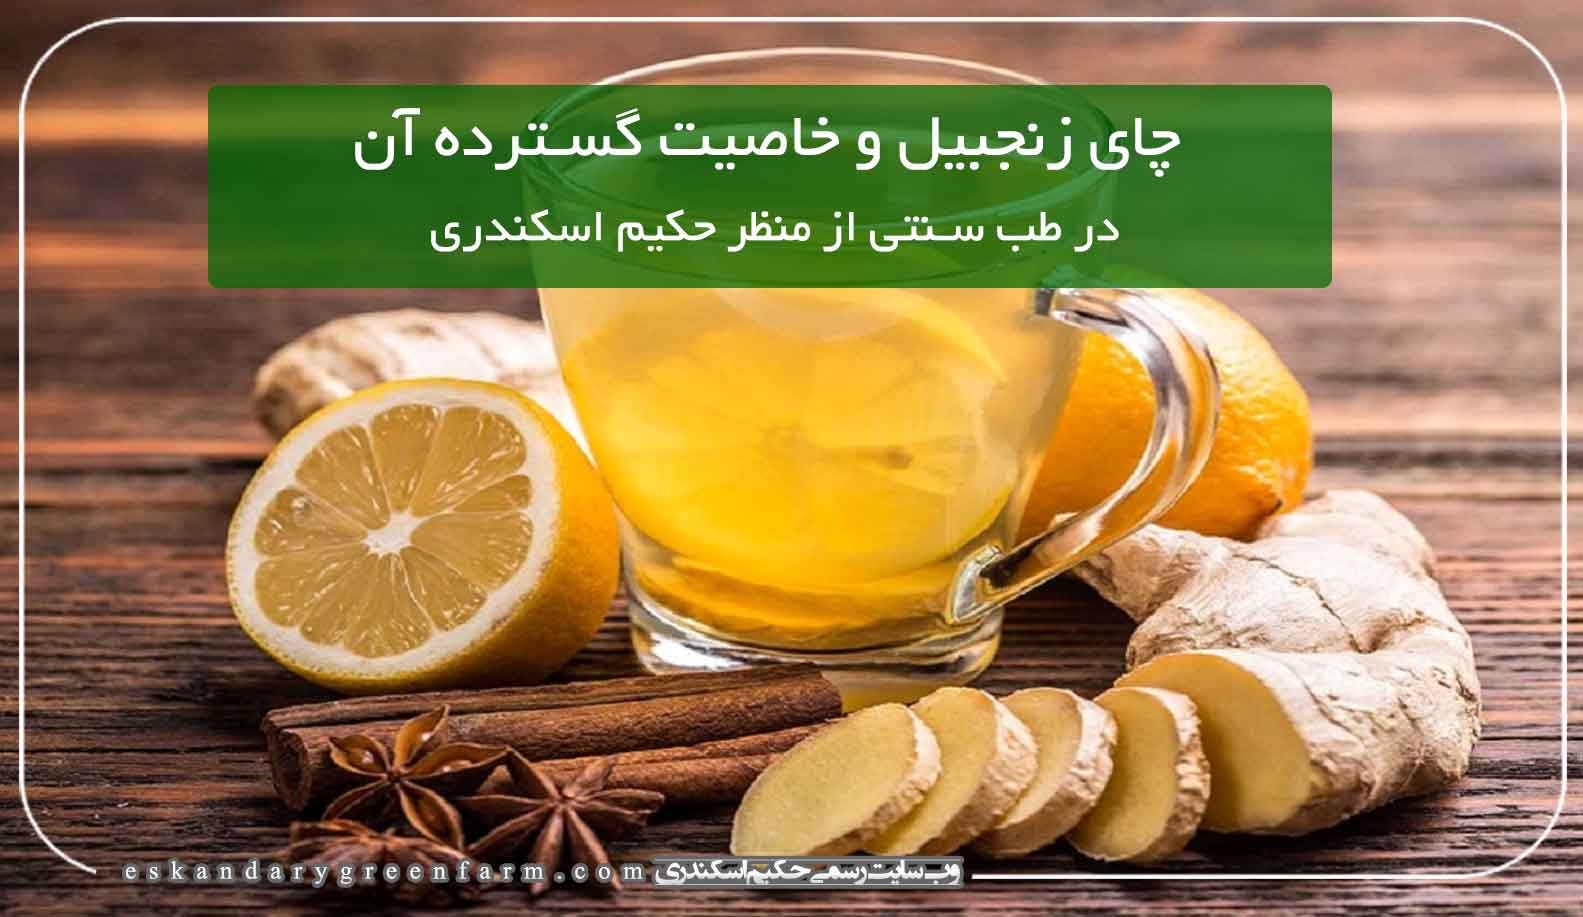 چای زنجبیل و خاصیت گسترده آن بر مبنای طب سنتی